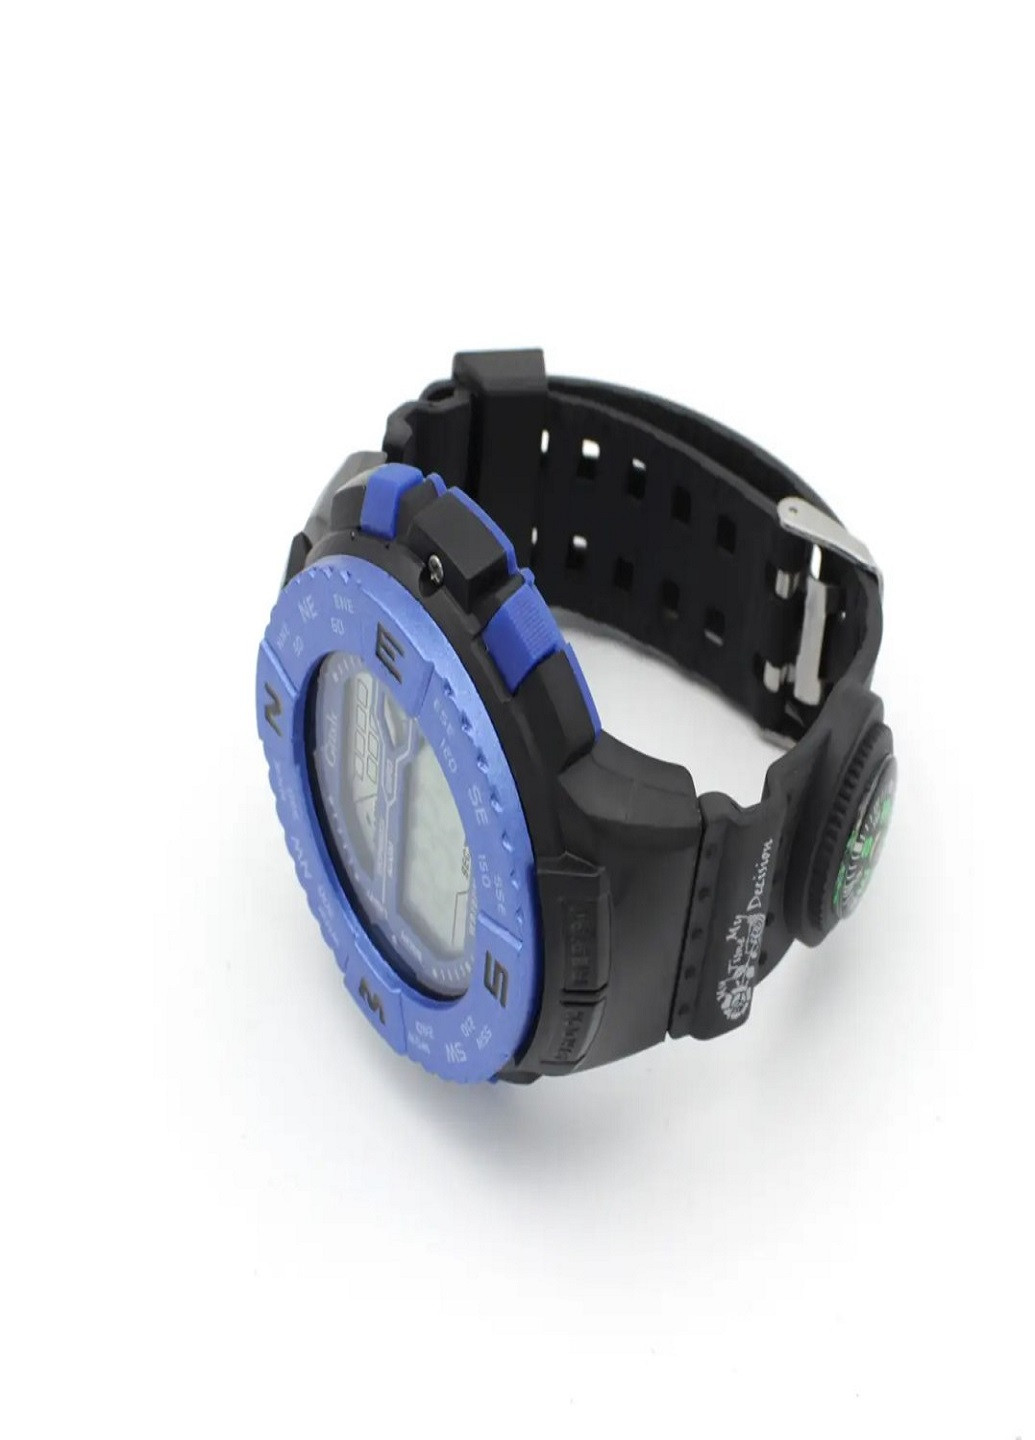 Універсальний водонепроникний наручний годинник з компасом Giish TR сторони світу Чорний з Синім VTech (259036311)